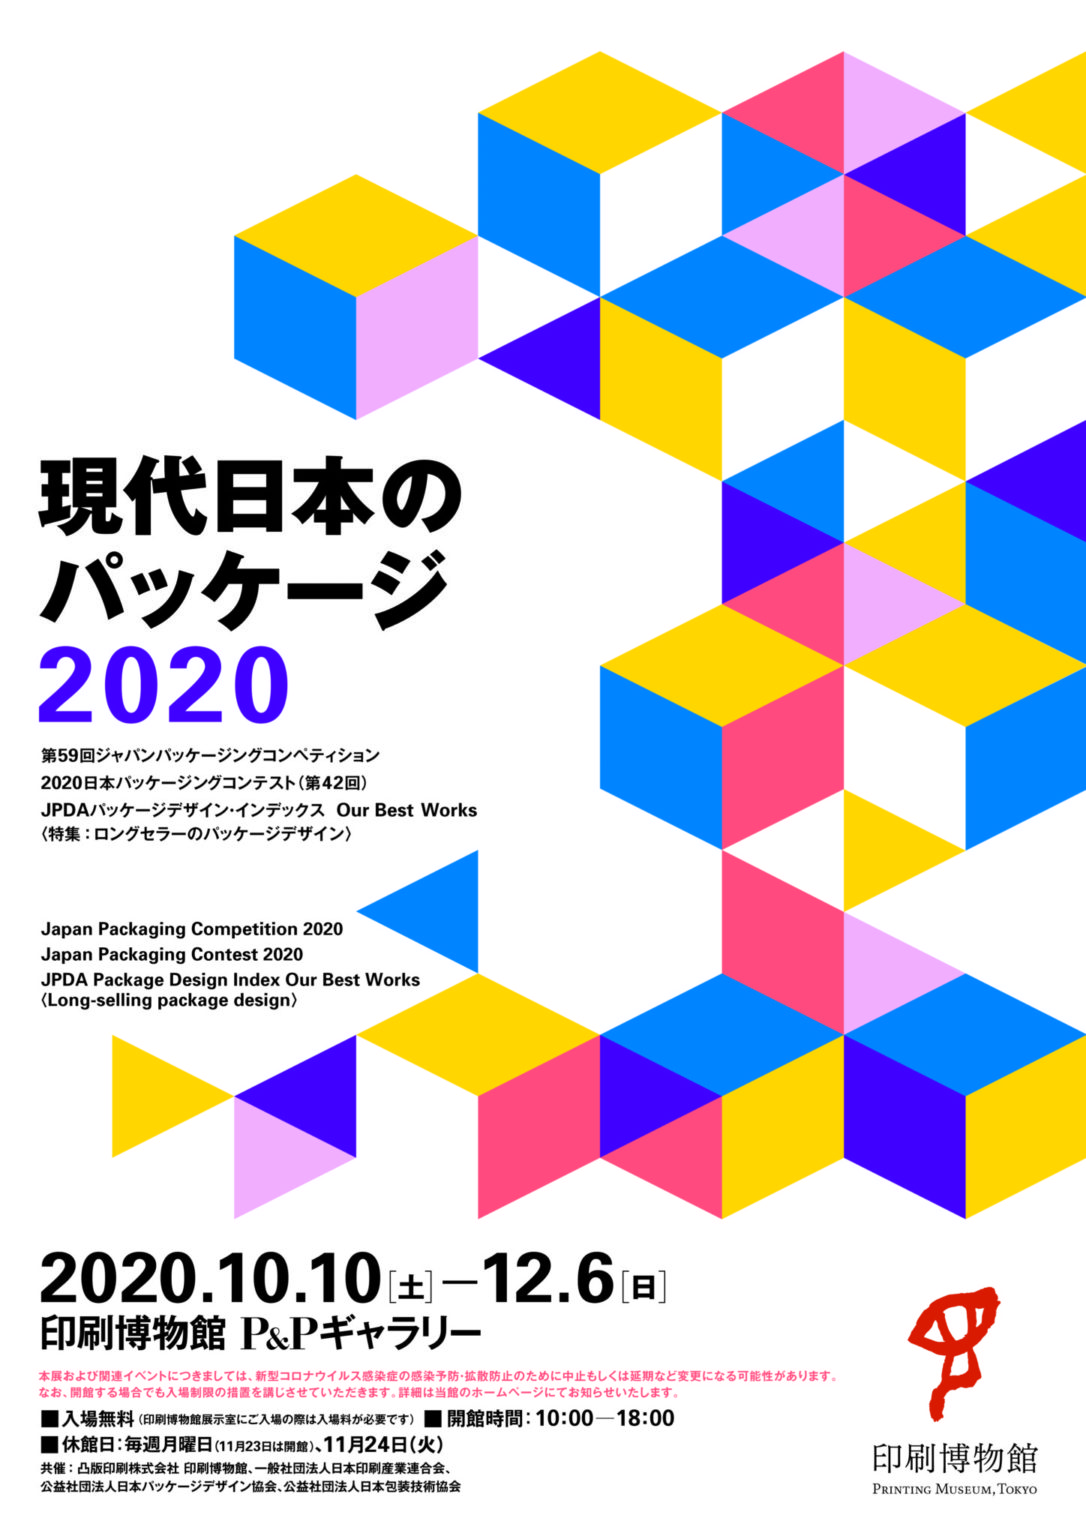 「現代日本のパッケージ 2020」／印刷博物館P&Pギャラリー